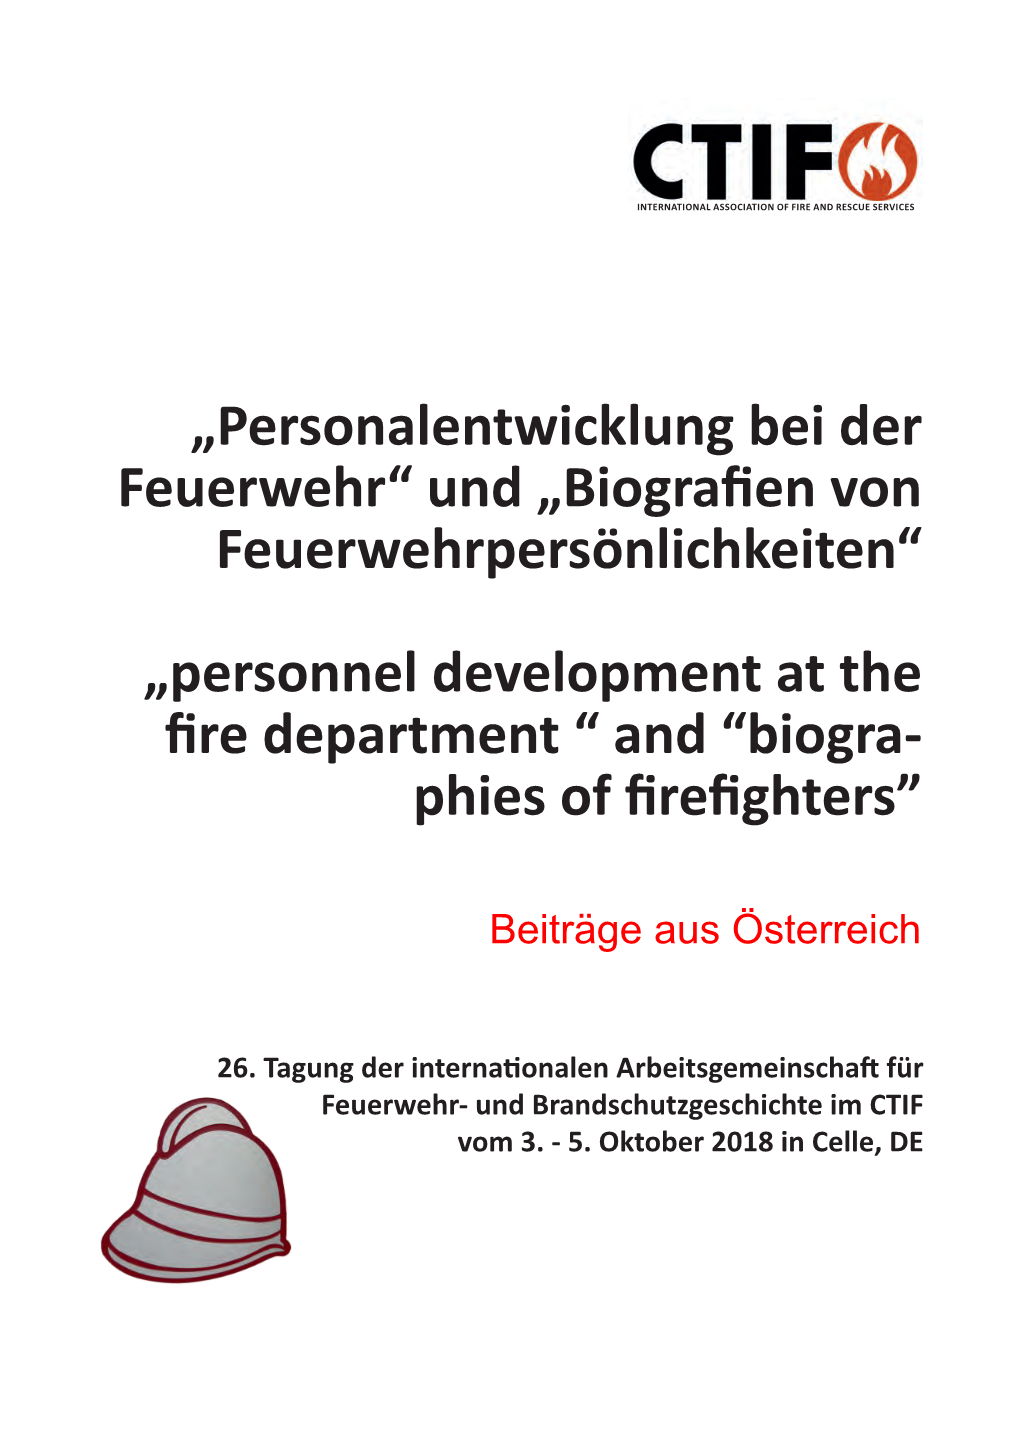 Biographien Österreichischer Feuerwehrpersönlichkeiten